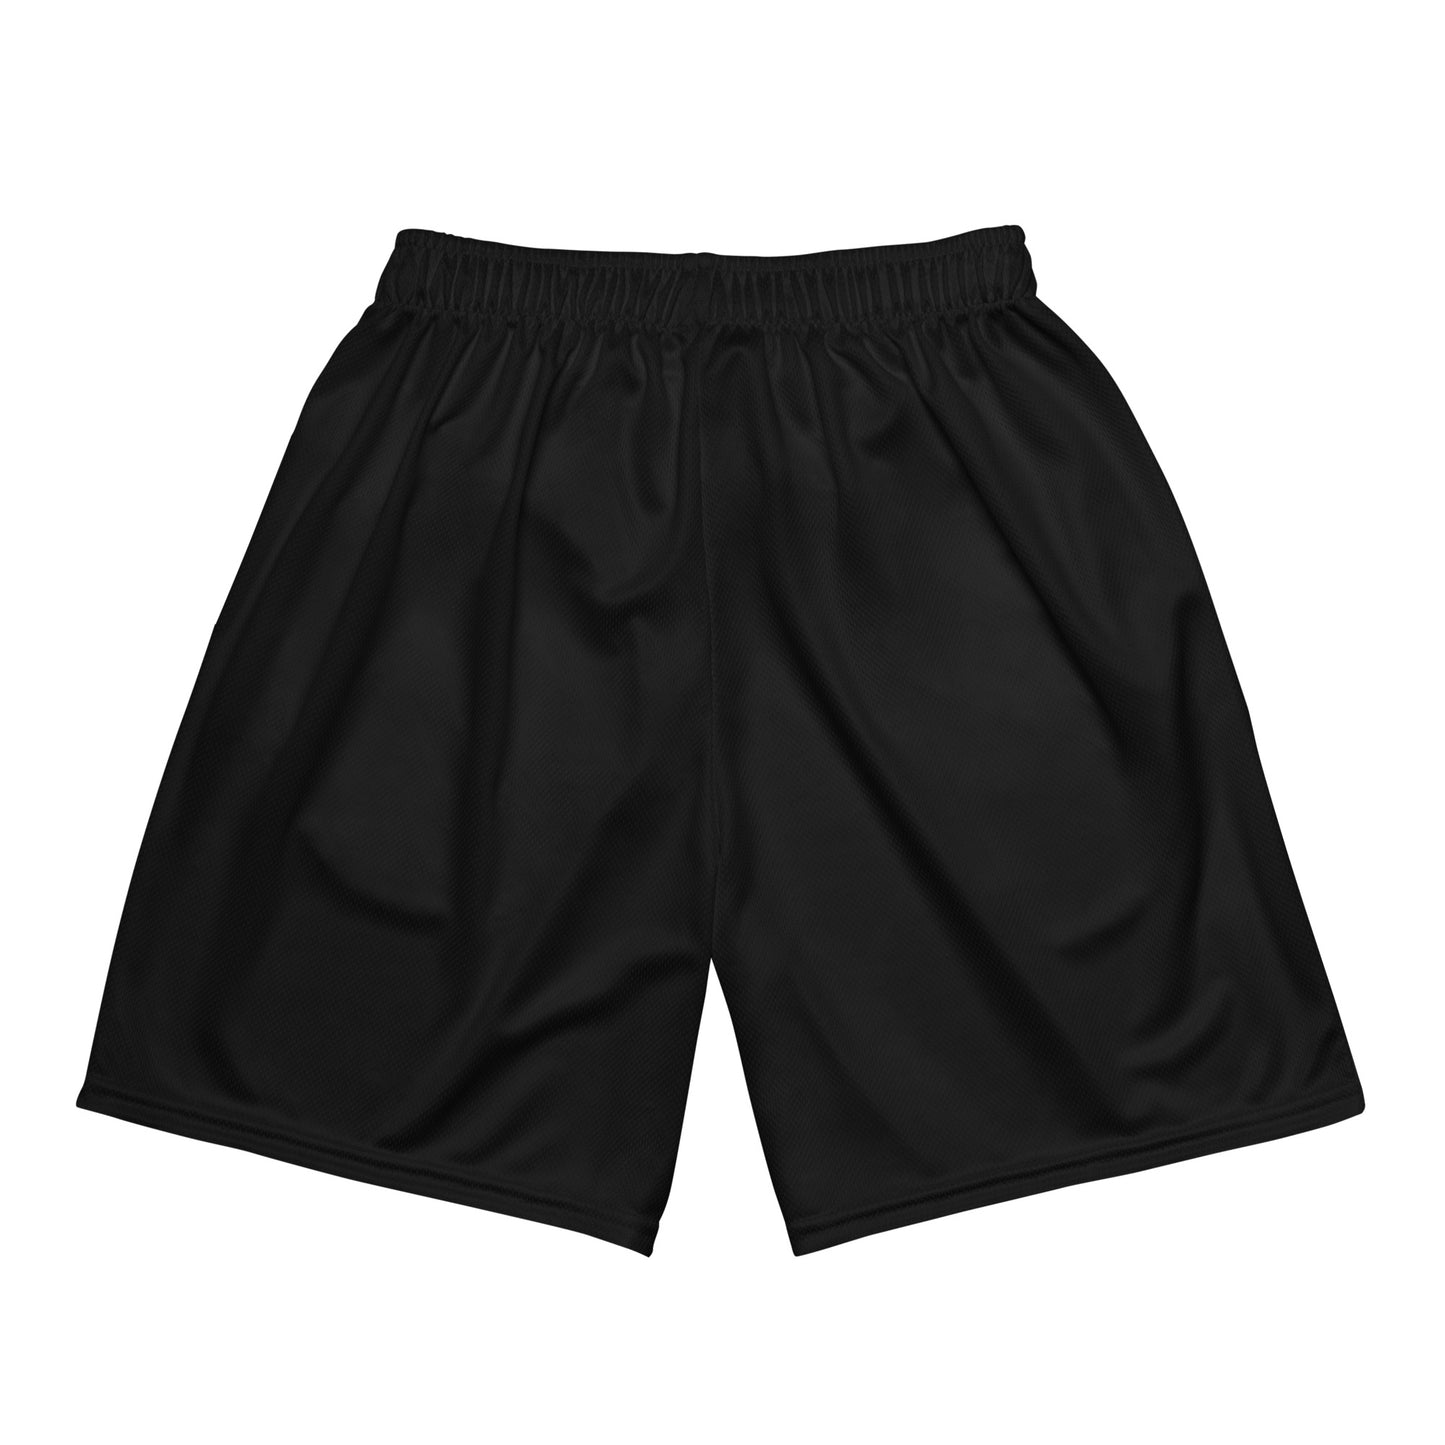 Bodily Temple Mesh Shorts (Black)